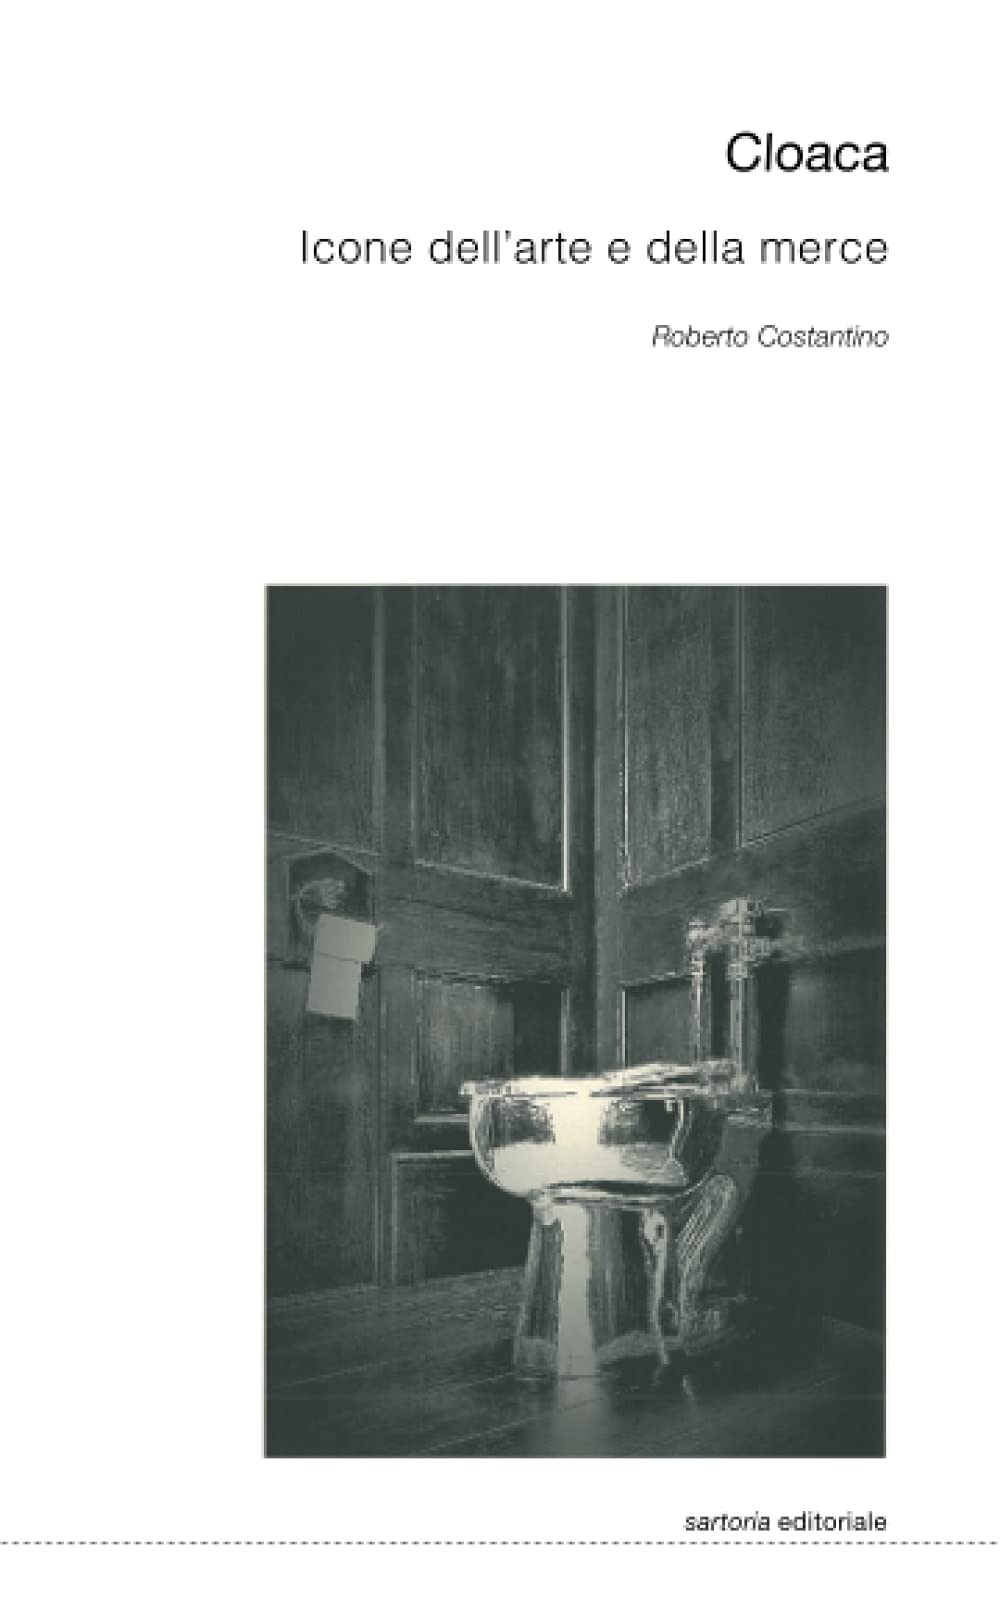 Roberto Costantino, Cloaca. Icone dell’arte e della merce (Postmedia Books, Milano 2021)